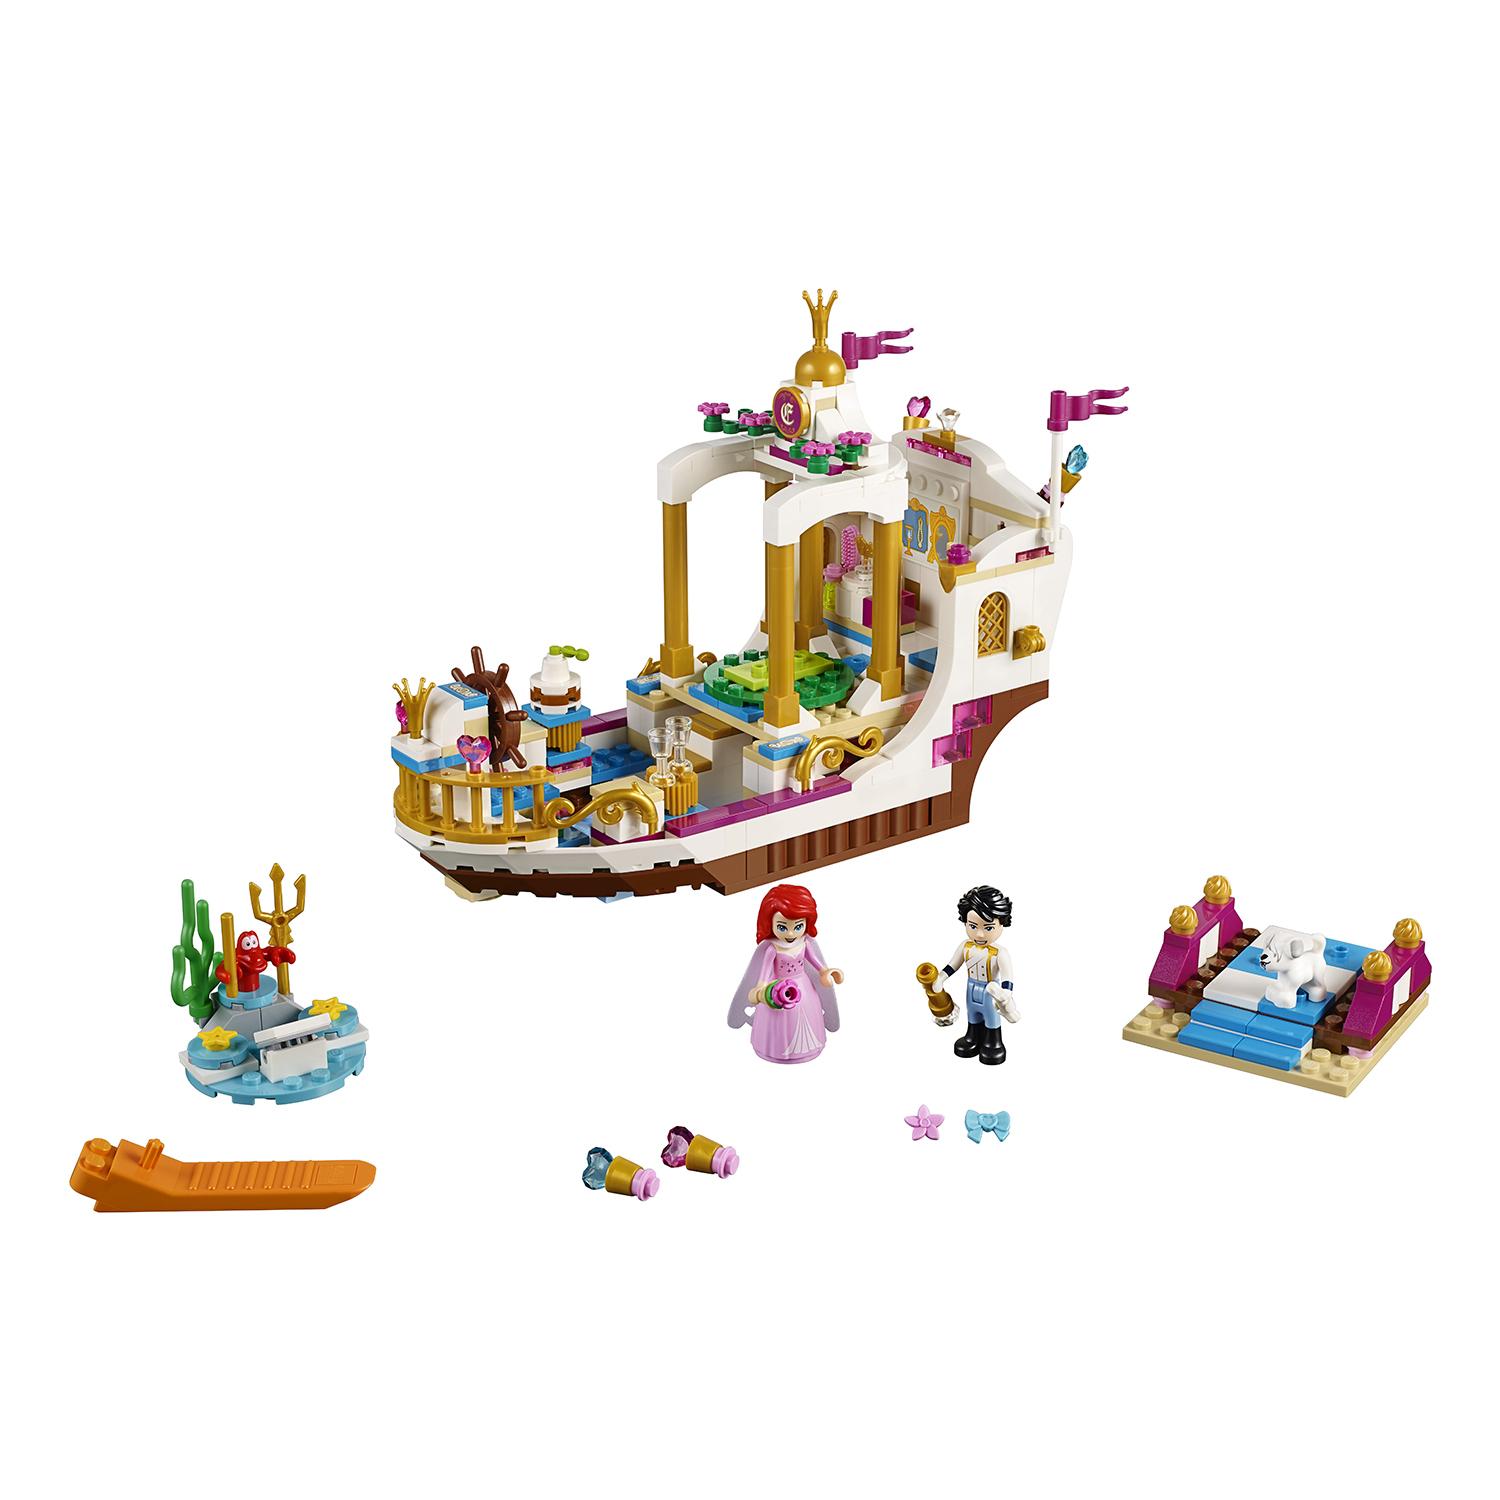 Lego Disney Princess 41153 Королевский корабль Ариэль